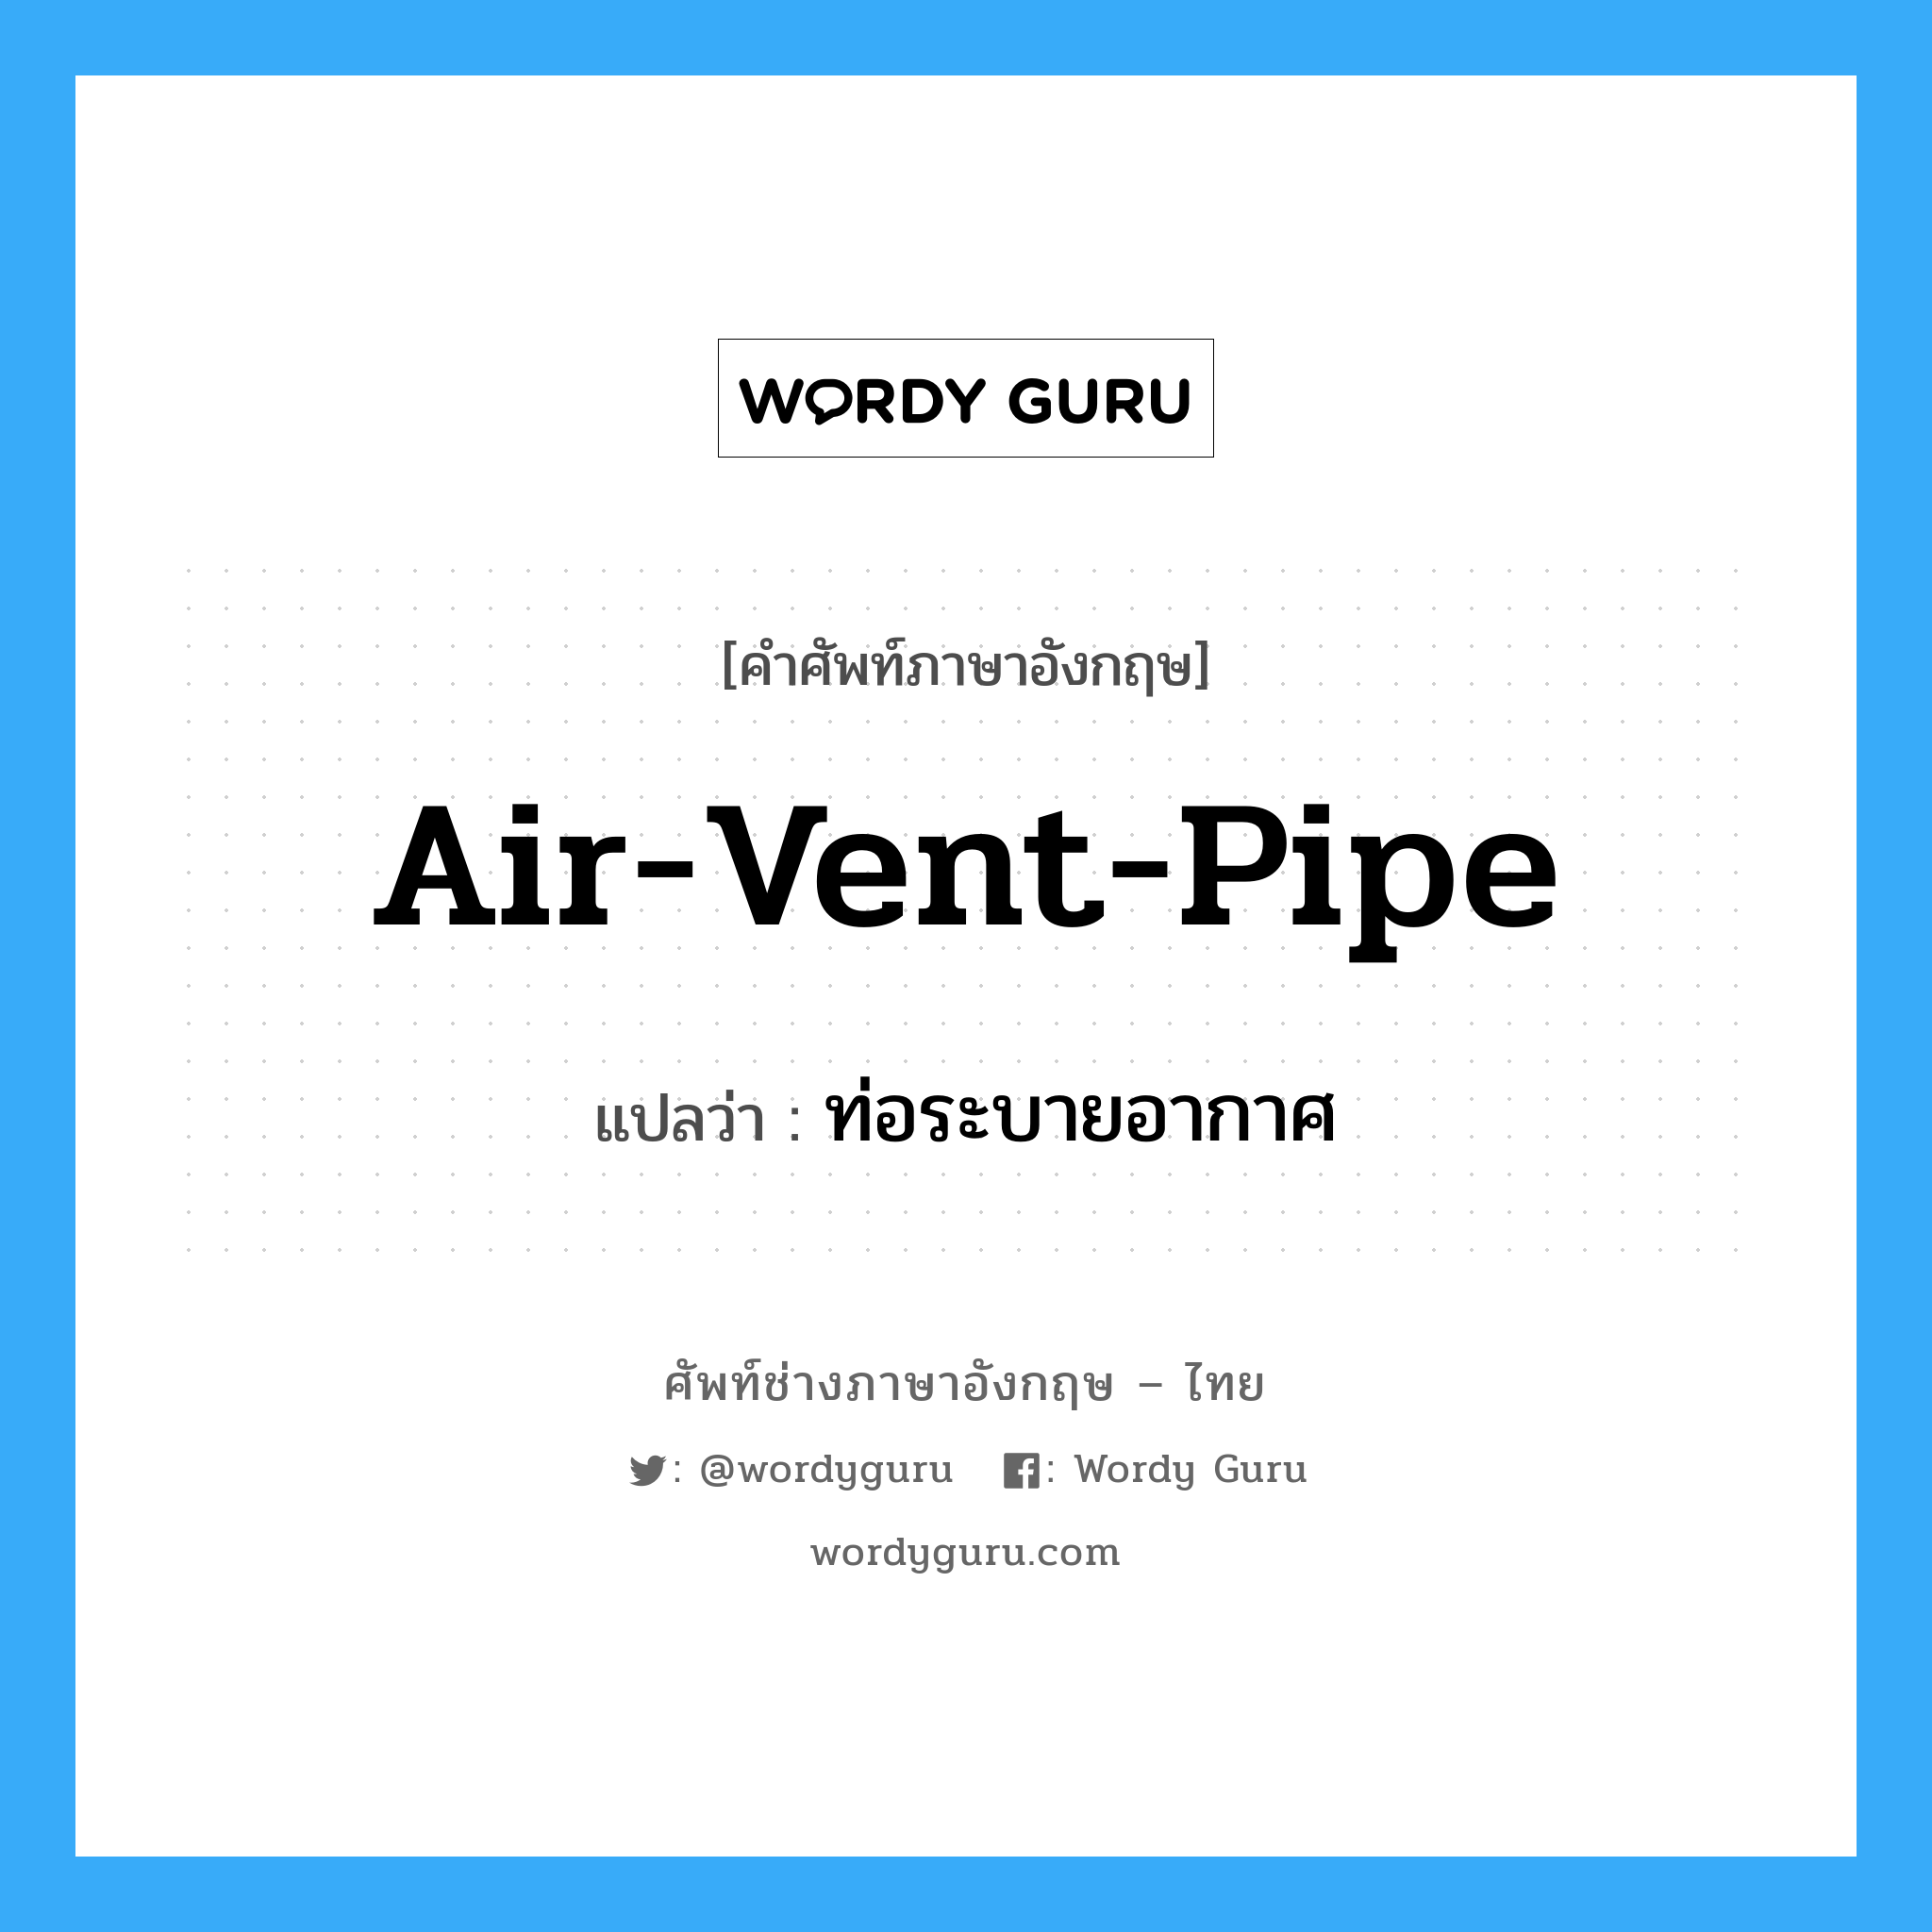 air-vent-pipe แปลว่า?, คำศัพท์ช่างภาษาอังกฤษ - ไทย air-vent-pipe คำศัพท์ภาษาอังกฤษ air-vent-pipe แปลว่า ท่อระบายอากาศ